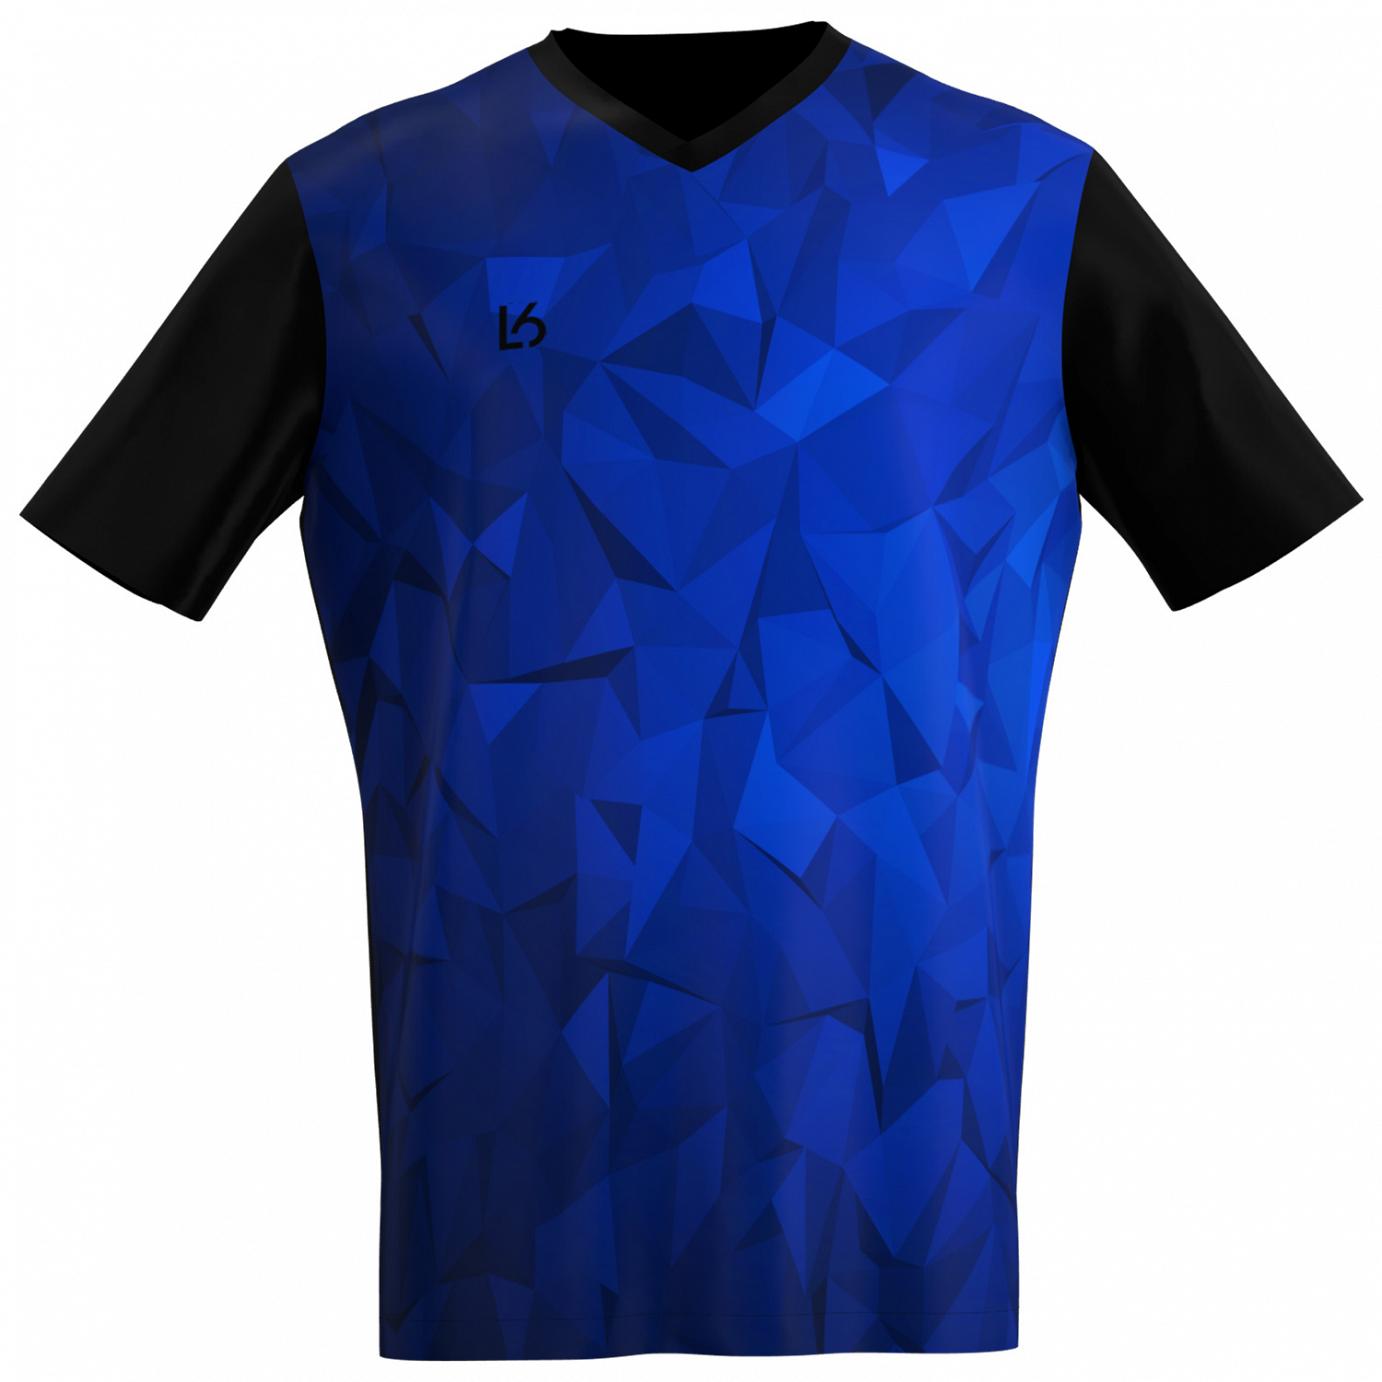 L6 V-Neck Trikot - Polygon Blue - Badminton Shop Franken